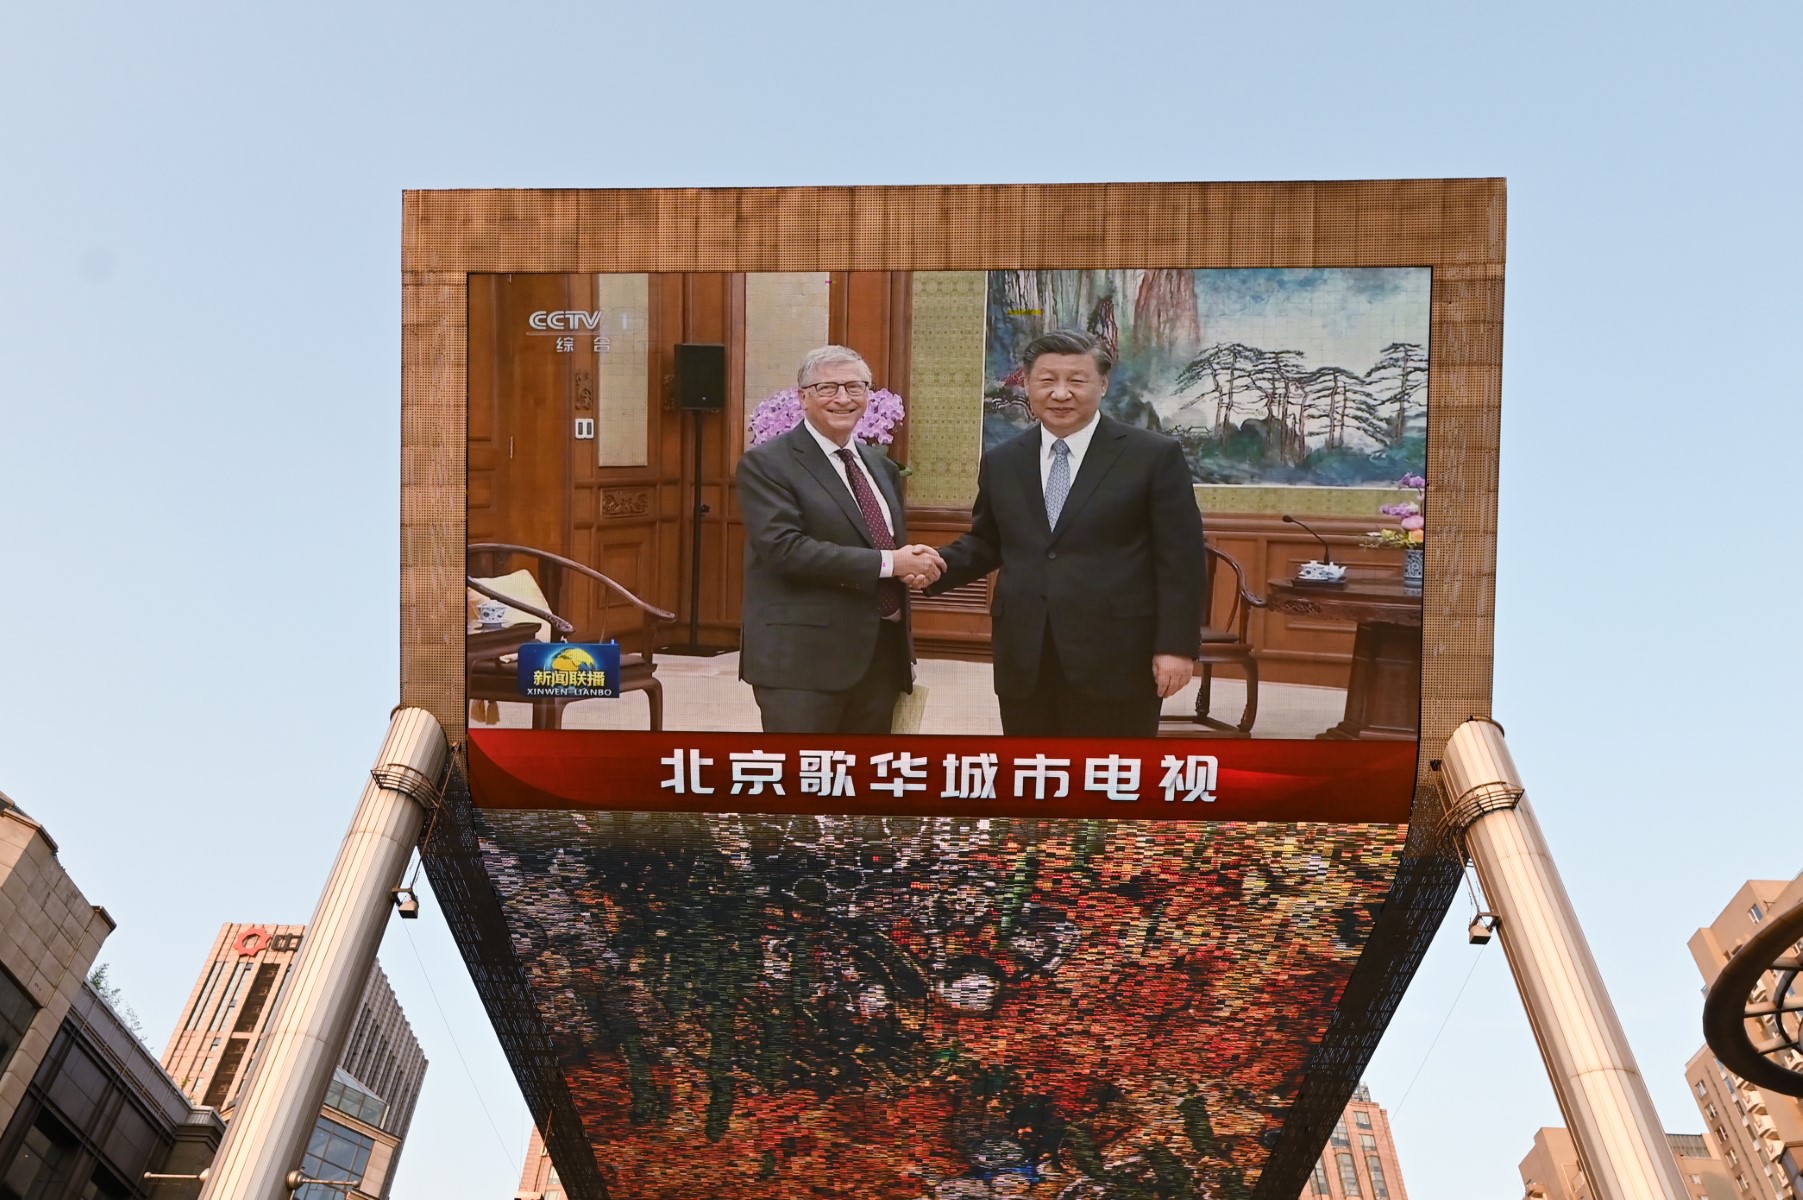 Bill Gates se reúne con Xi Jinping; donará 50 mdd para investigación médica